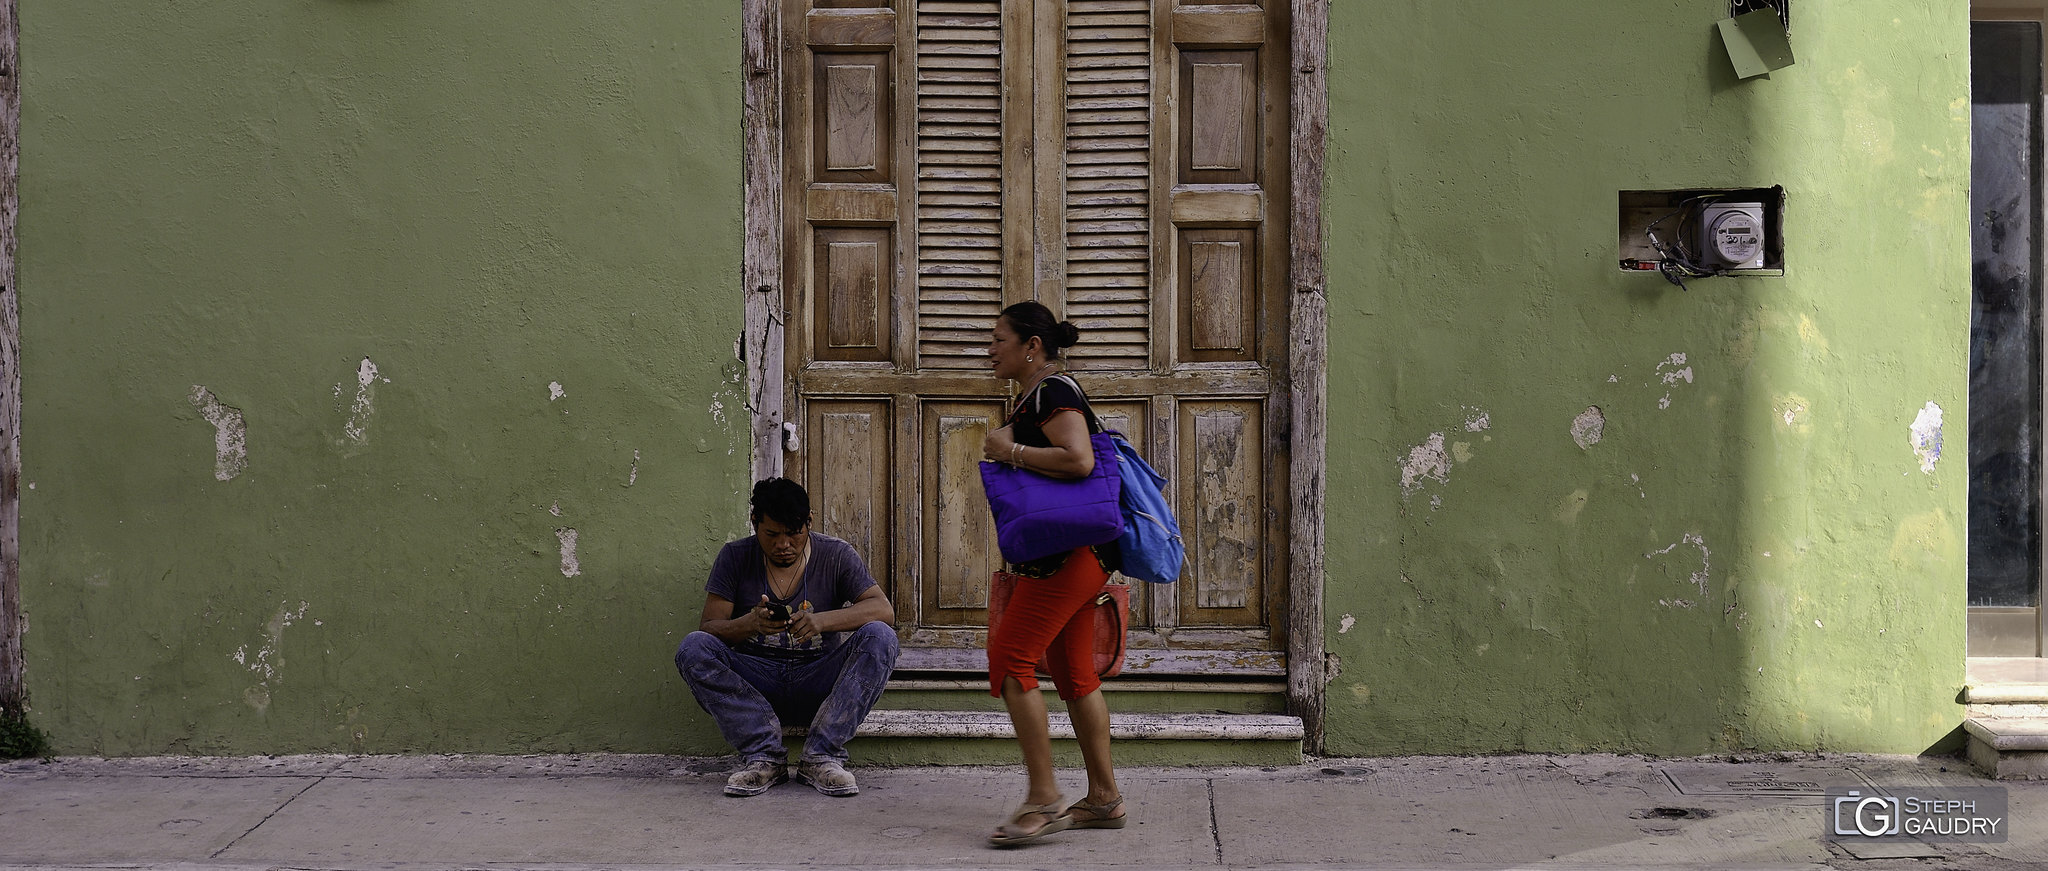 Scène de rue à Campeche [Click to start slideshow]